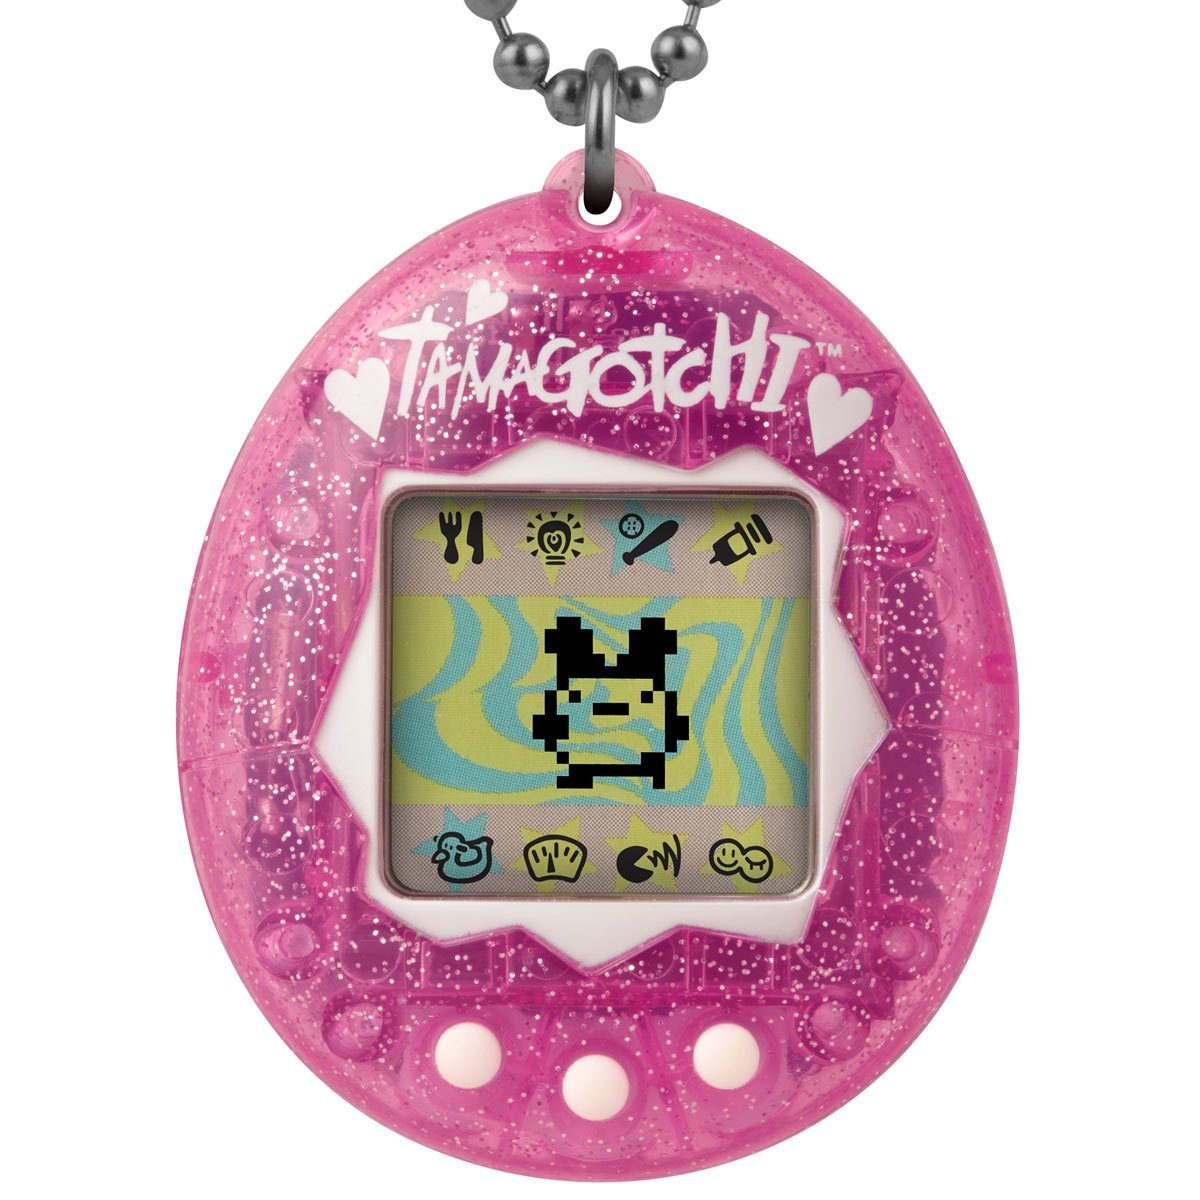 Bandai Tamagotchi Original Classic Digital Pet Pink And Blue Sky GEN 2 